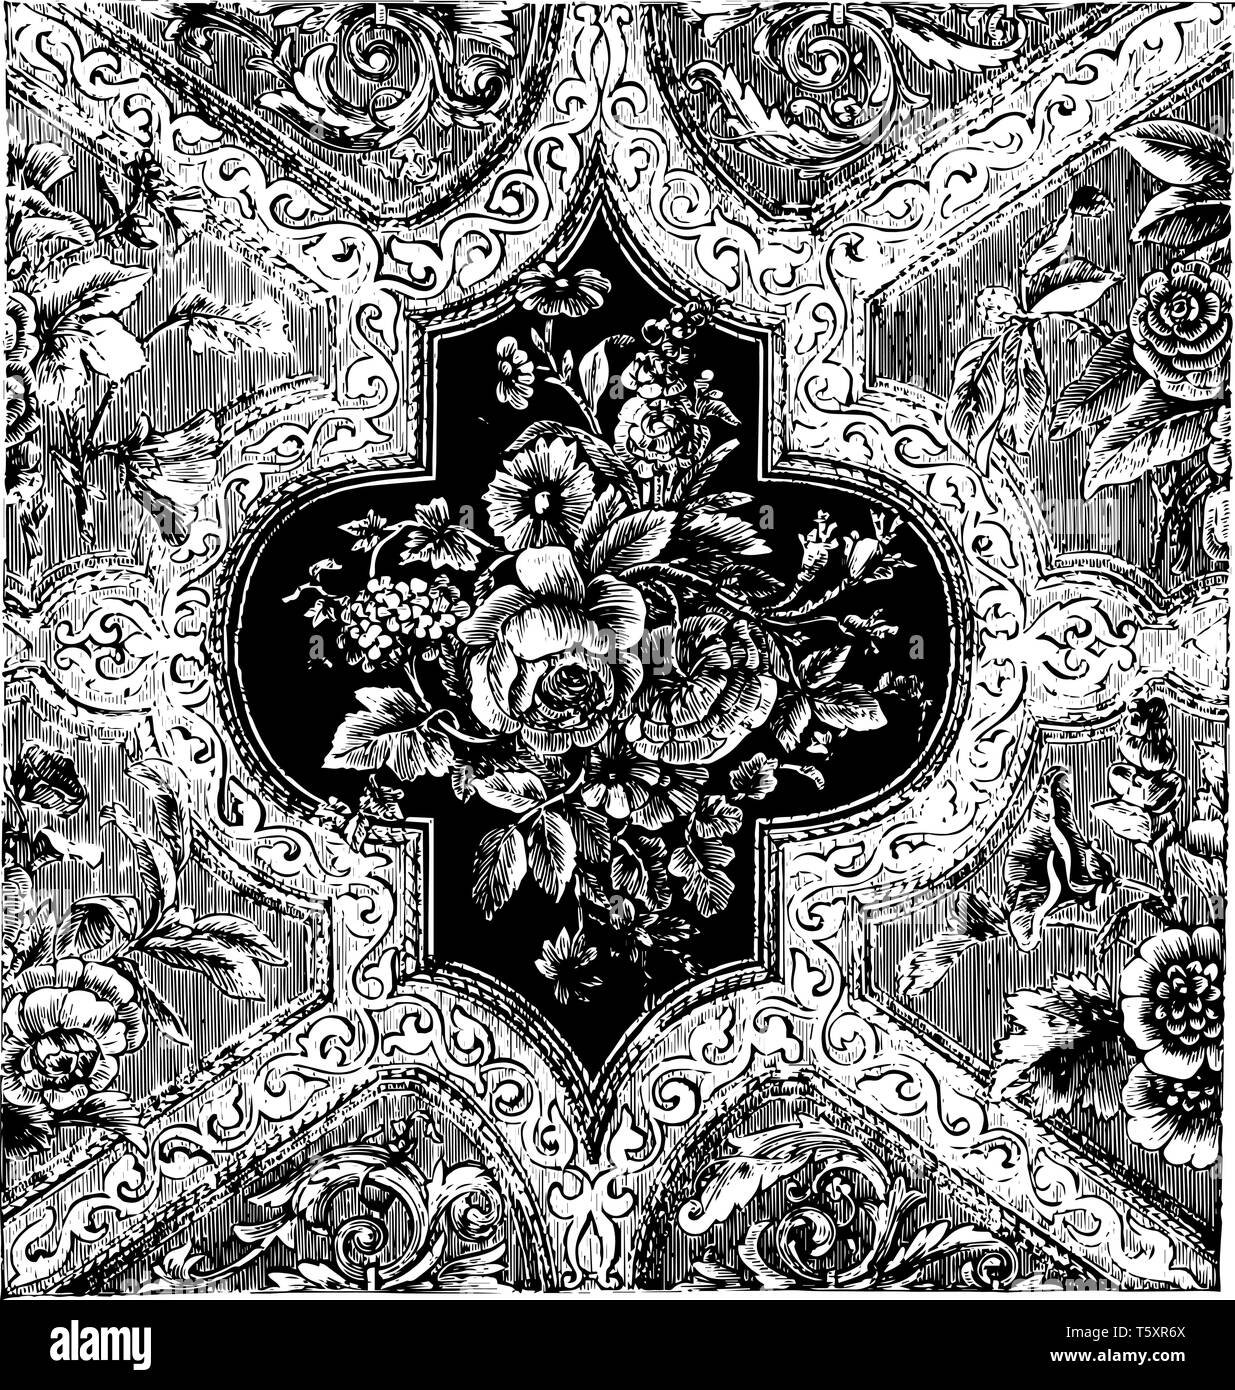 Teppich ist aus Samt in einem floralen Muster eingraviert, es ist ein in der Regel nicht größer als ein Einzelzimmer, vintage Strichzeichnung oder Gravur Abbildung Stock Vektor